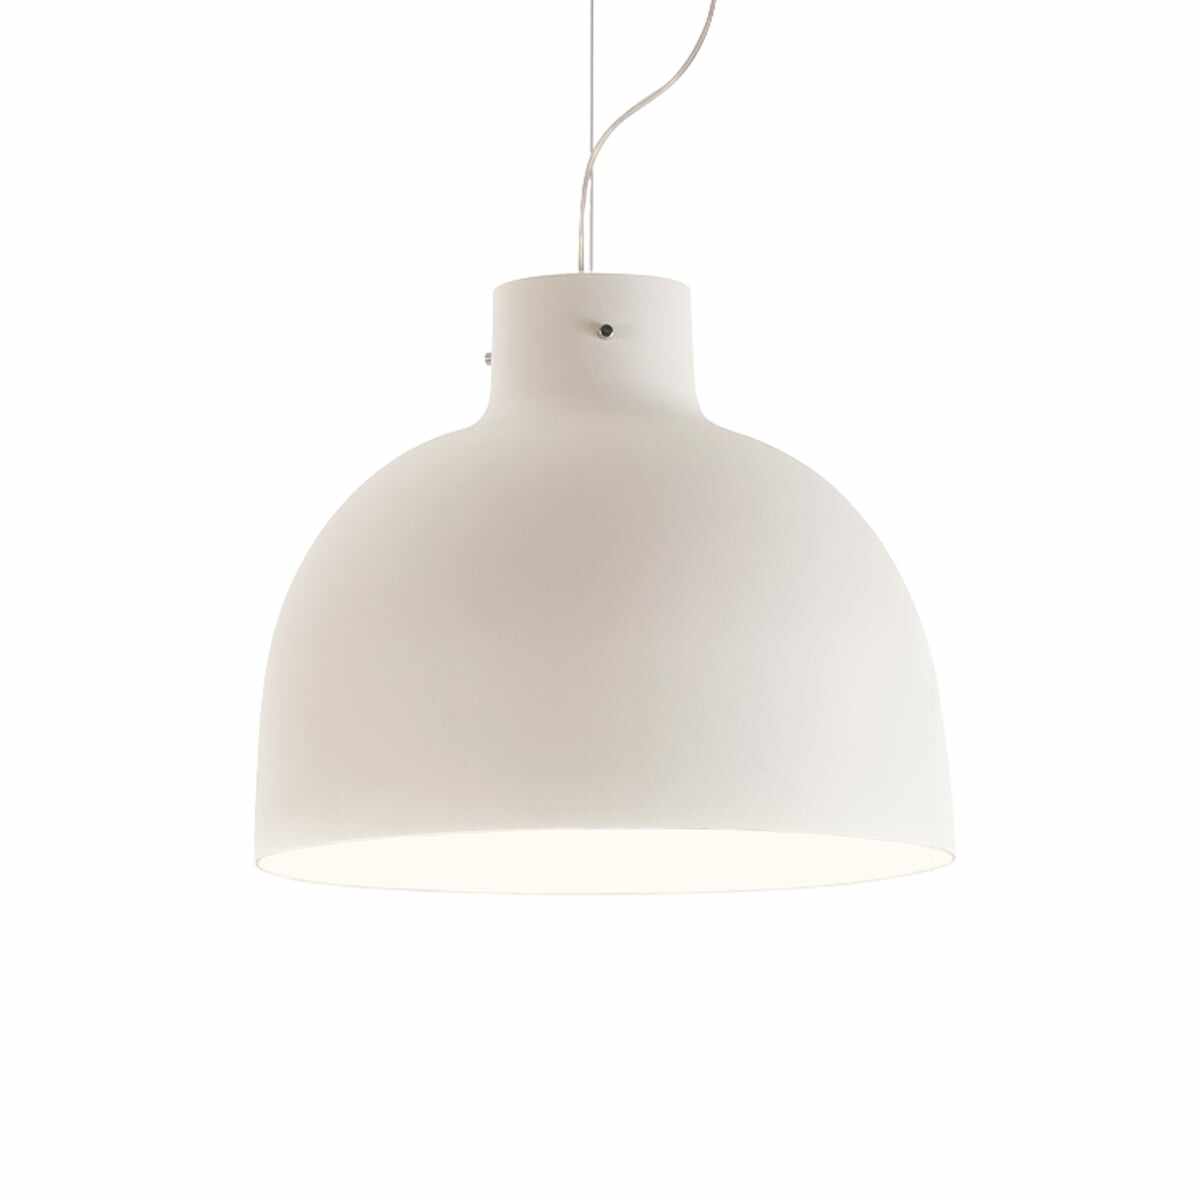 Suspensie Kartell Bellissima design Ferruccio Laviani LED 15W d50cm alb